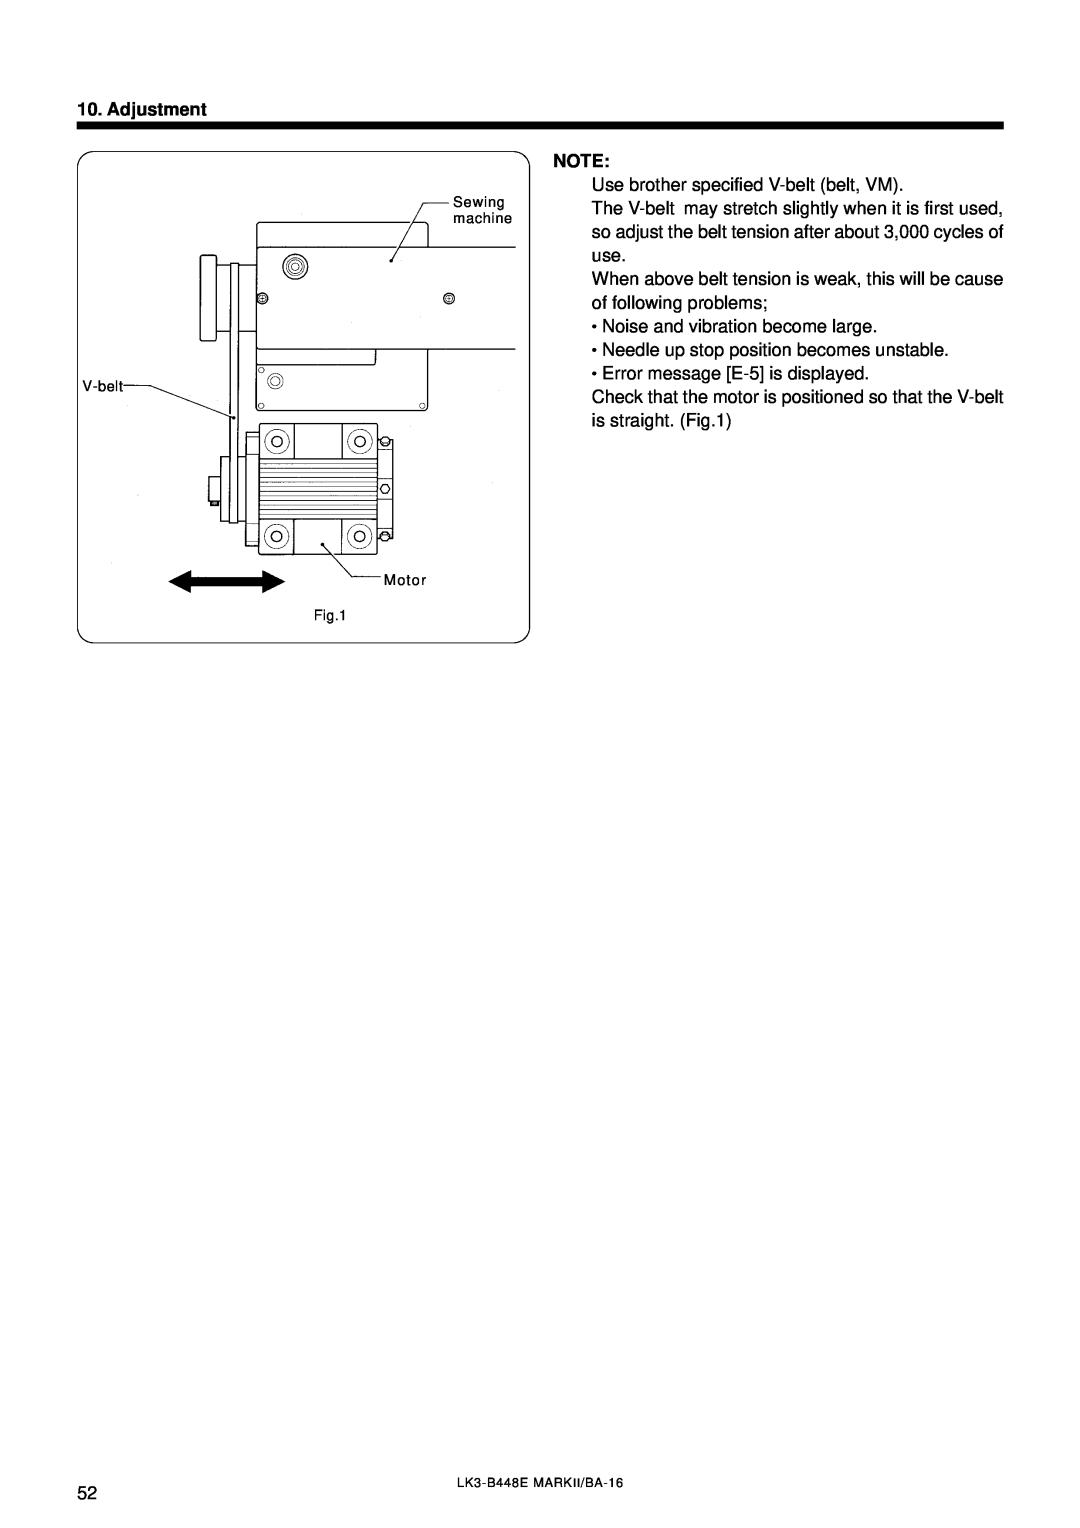 Brother LK3-B448E instruction manual Adjustment, Sewing machine V-belt, Motor 